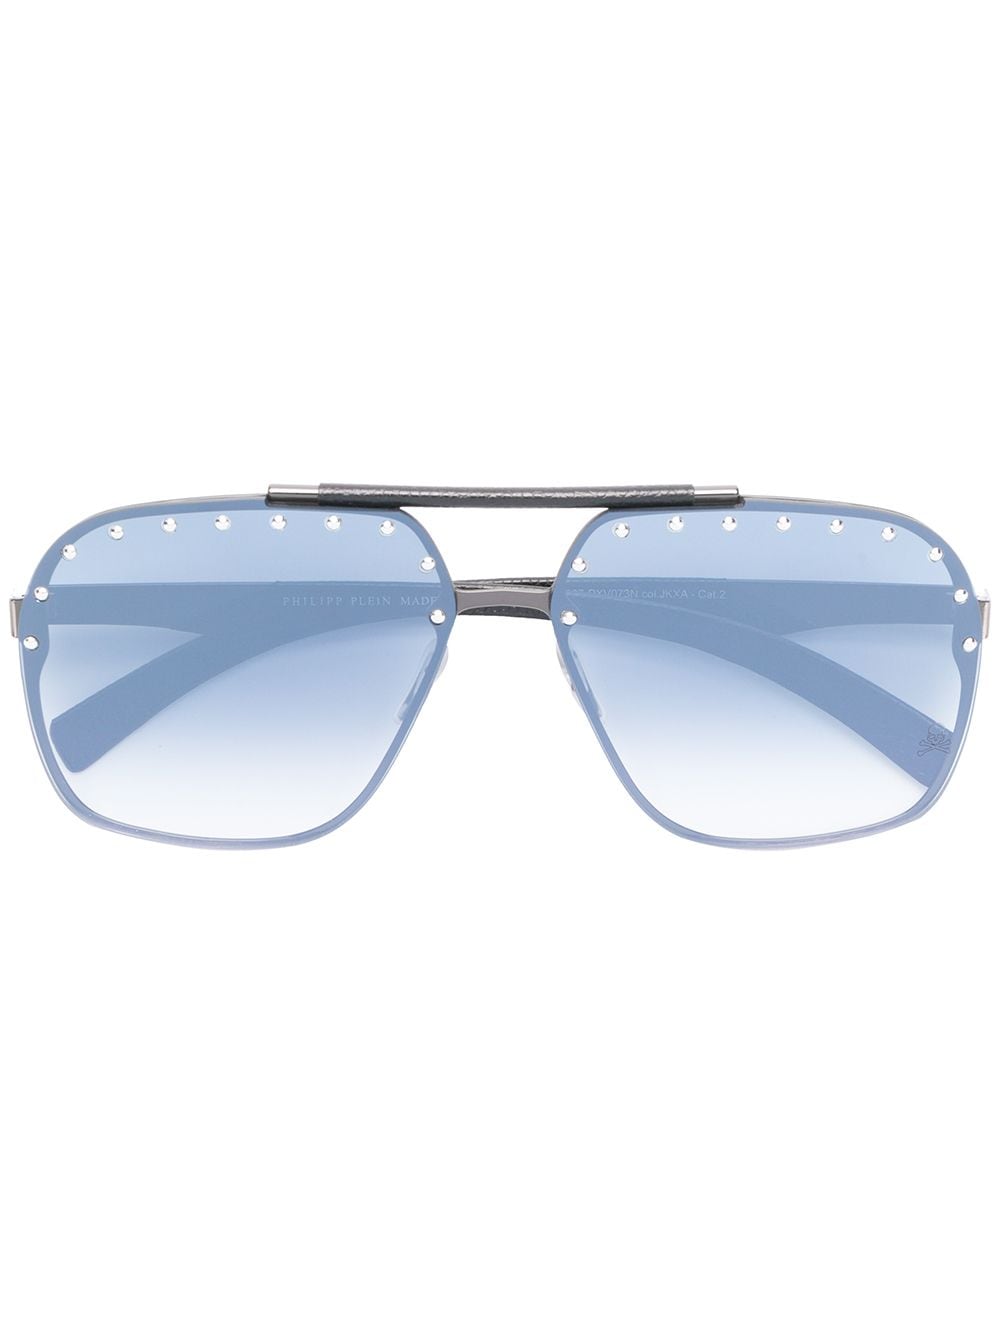 фото Philipp plein солнцезащитные очки-авиаторы с заклепками